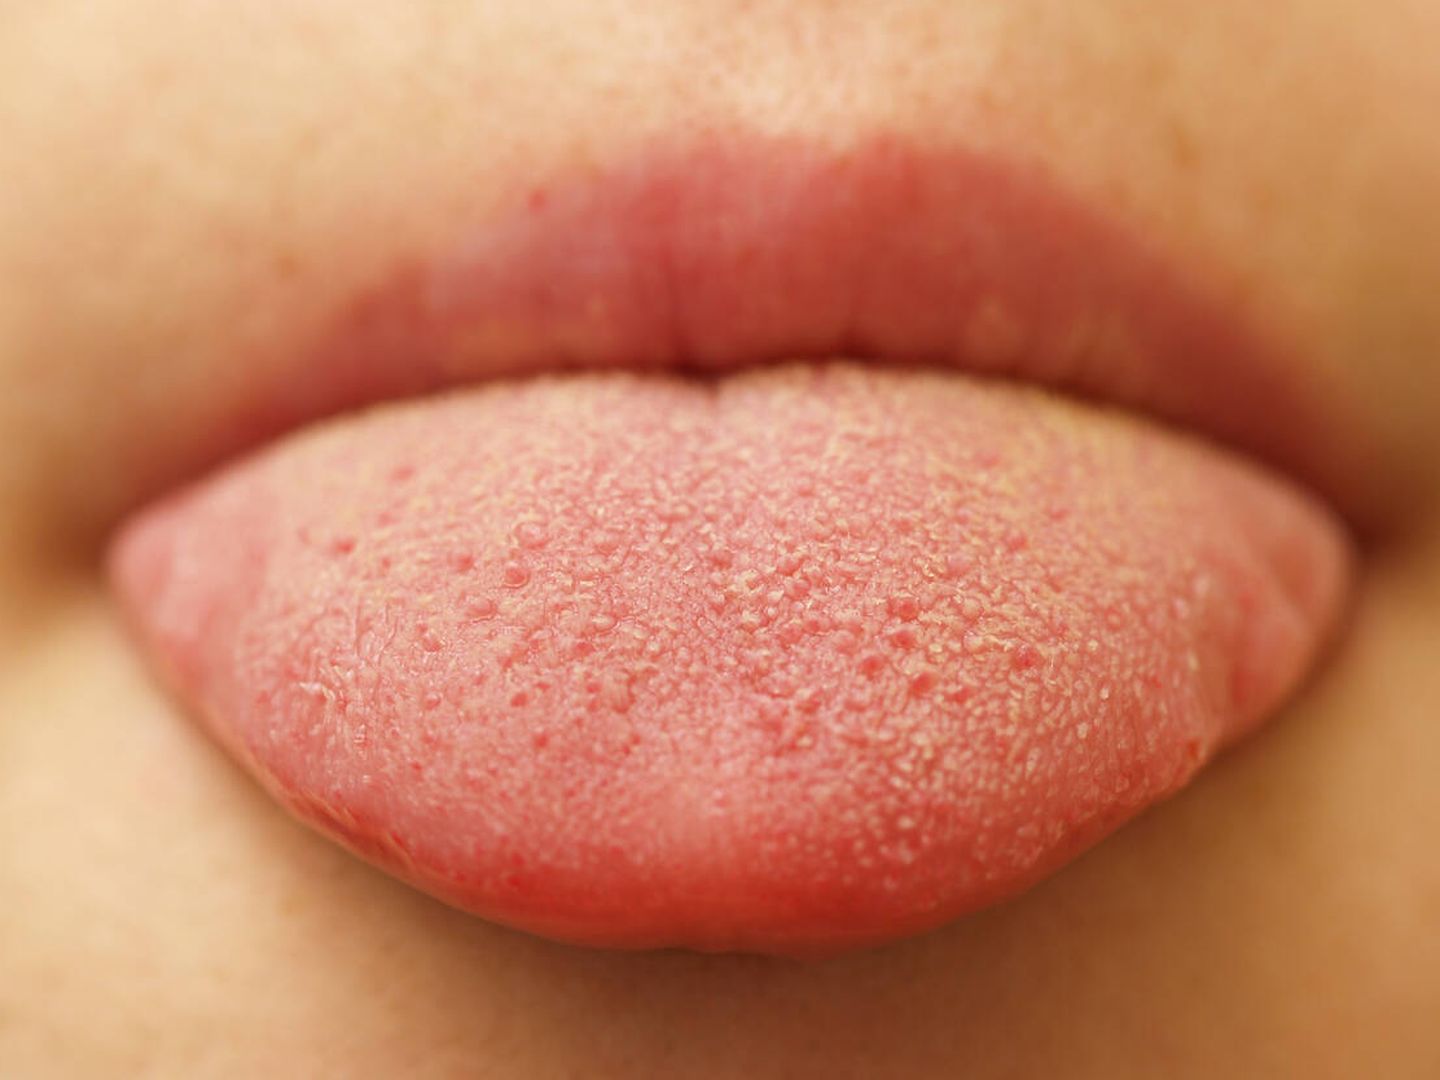 Una investigación analizará papilas gustativas de la lengua para comprobar el efecto de la semaglutida. (iStock)